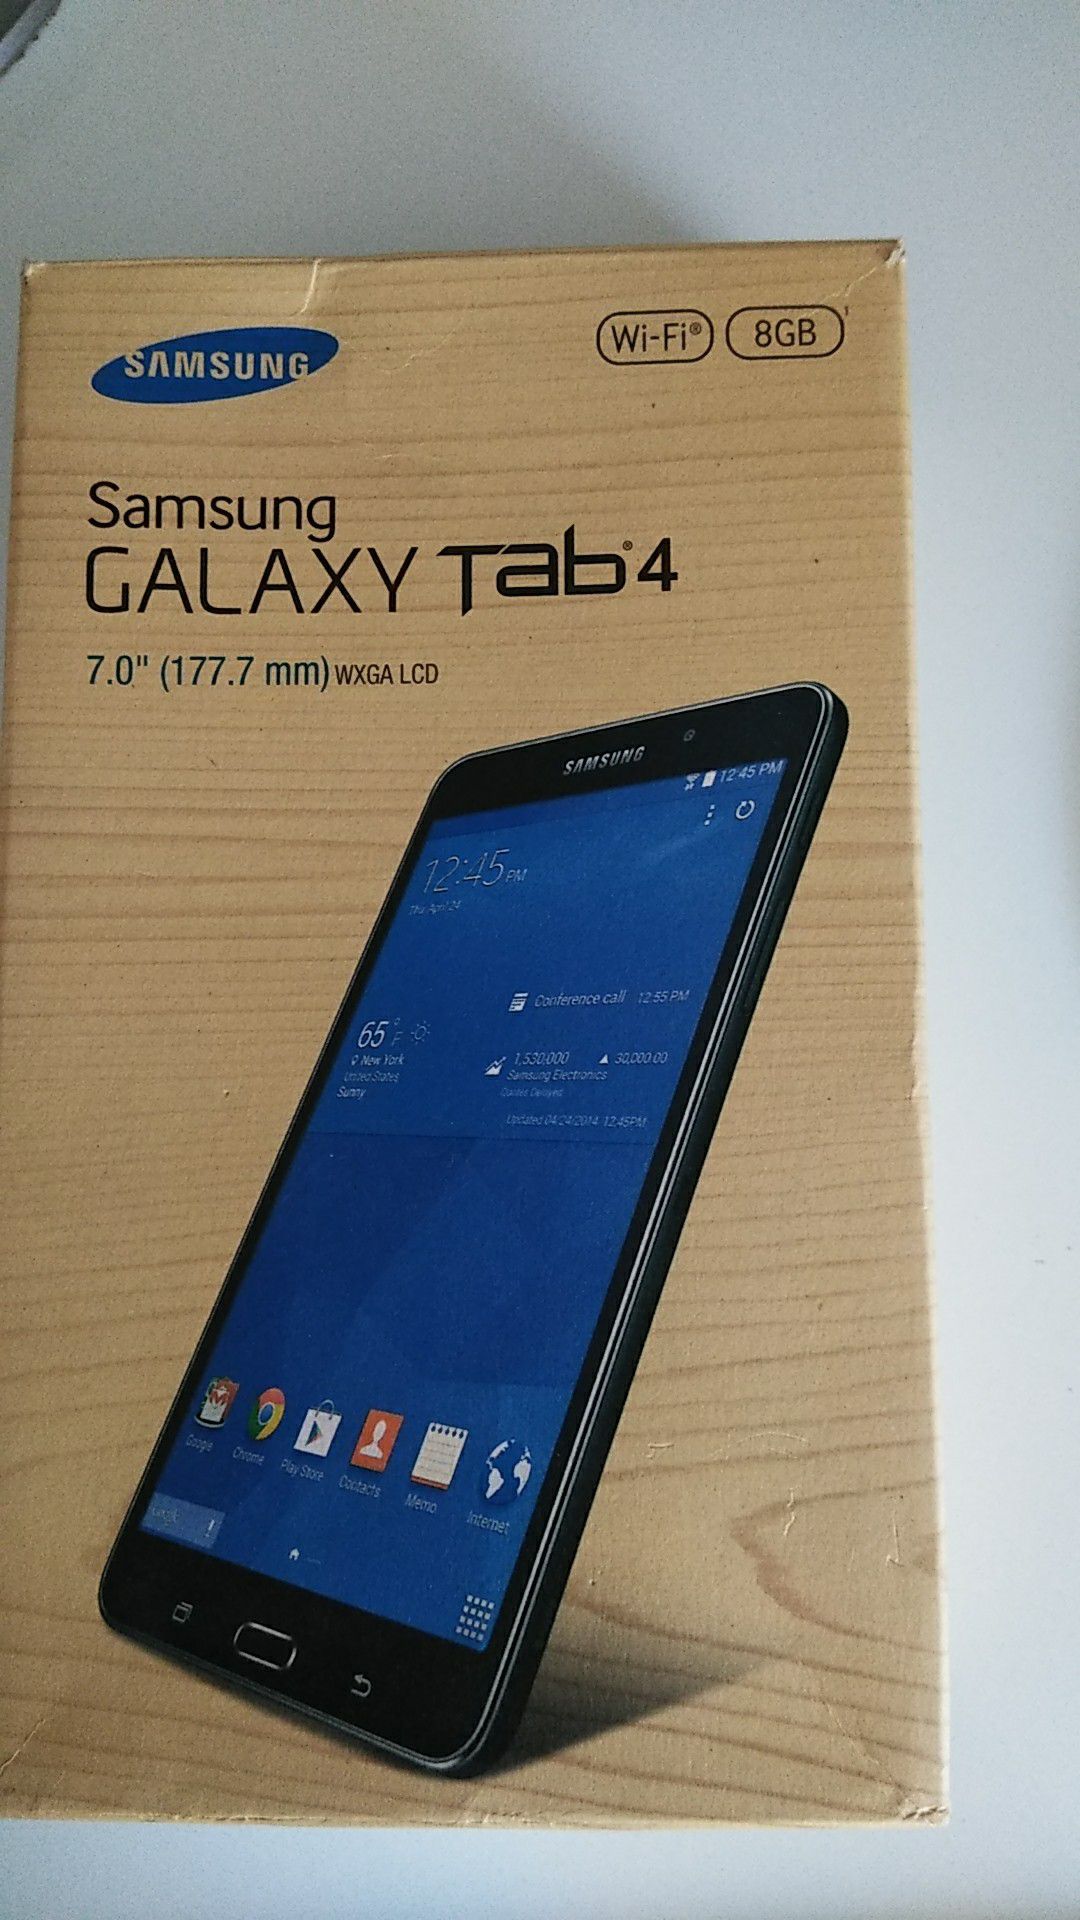 Samsung Galaxy tab 4 7.0